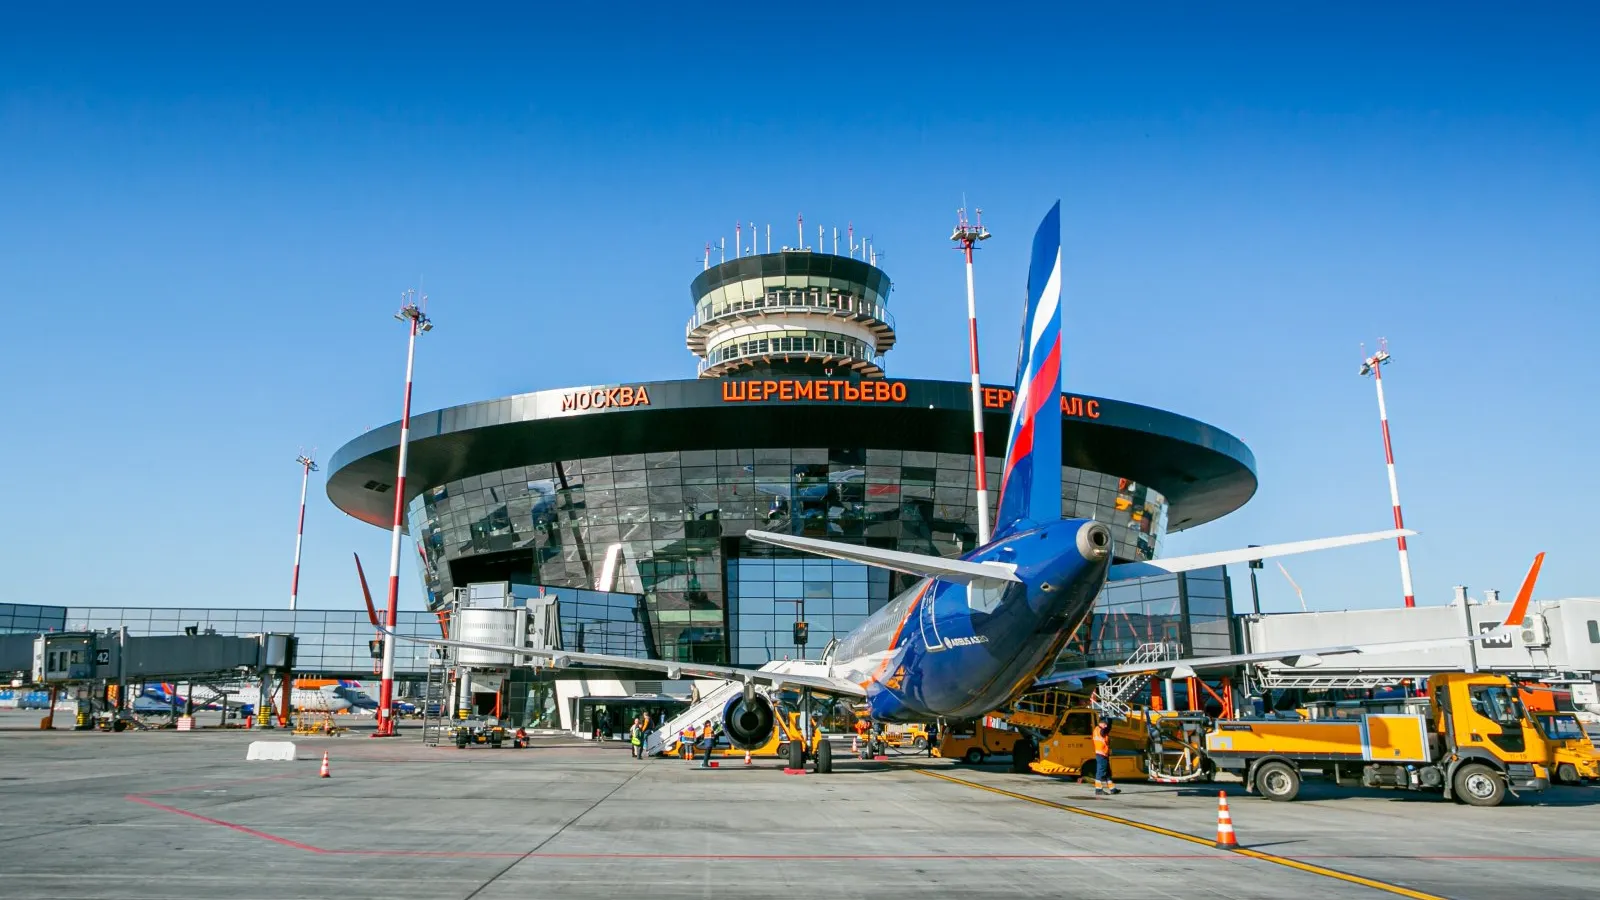 Порядка 20 кыргызстанцев застряли в аэропорту «Шереметьево» в Москве